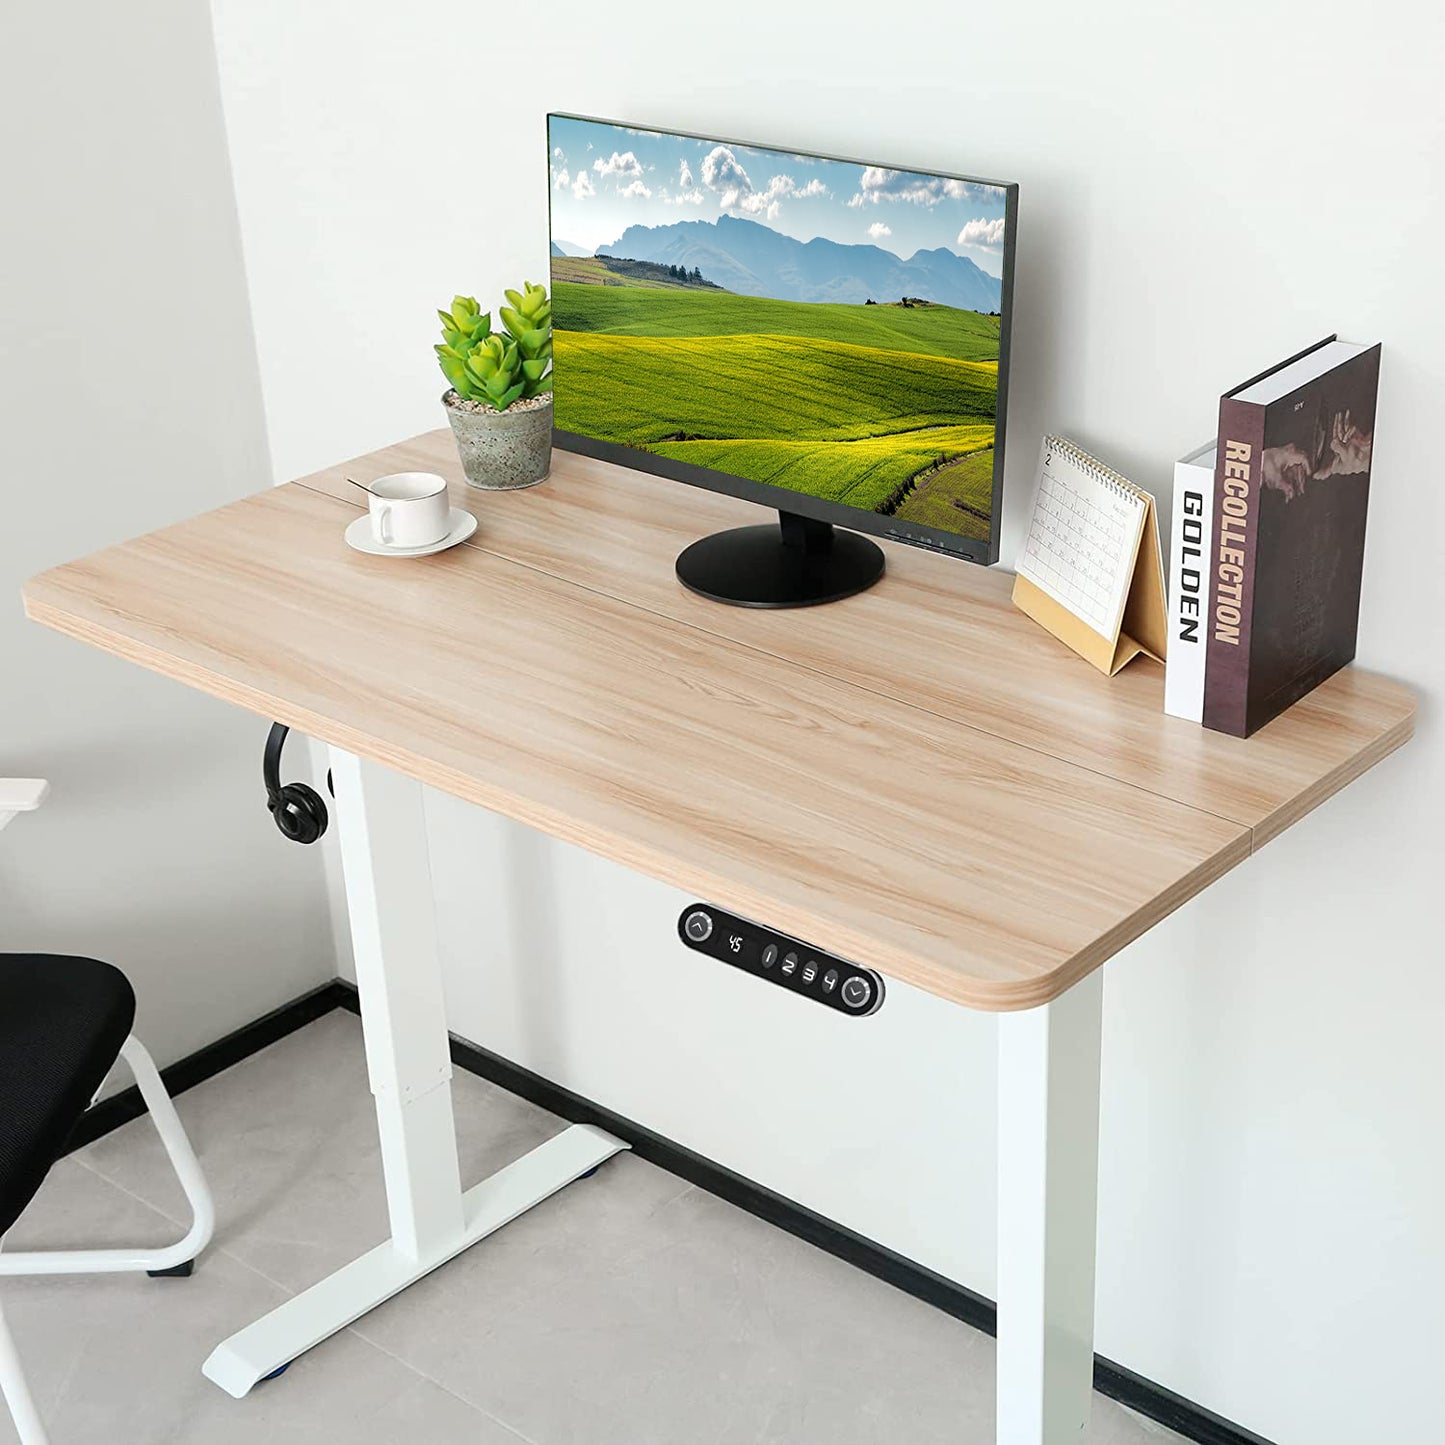 Oak standing desk for home office